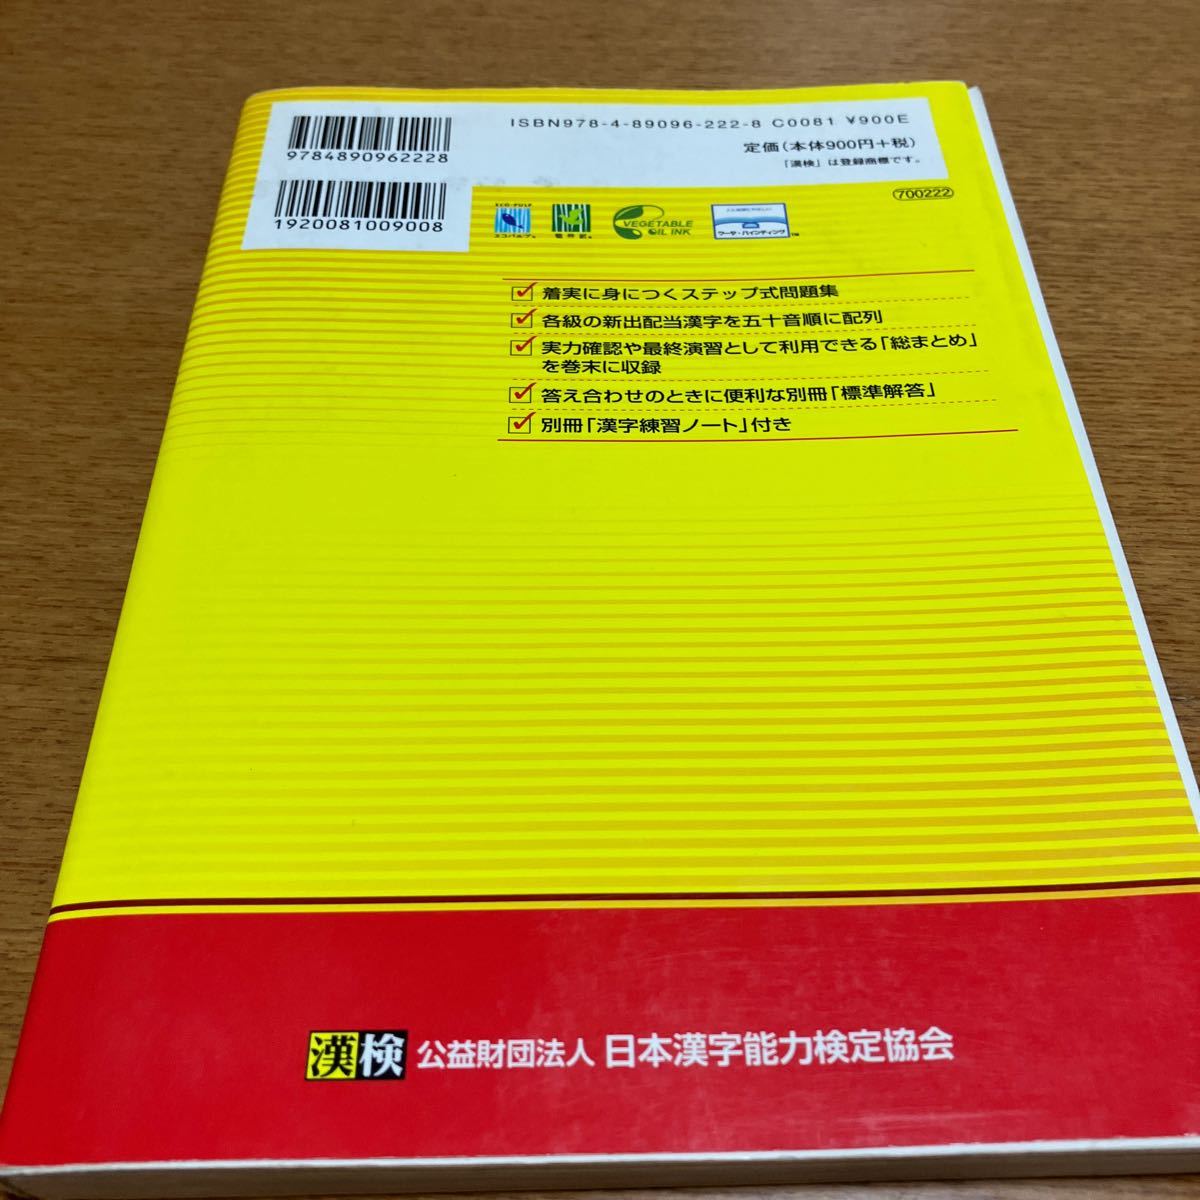 . осмотр 7 класс иероглифы учеба подножка ( модифицировано .3 версия ) Япония иероглифы способность сертификация ассоциация | сборник 